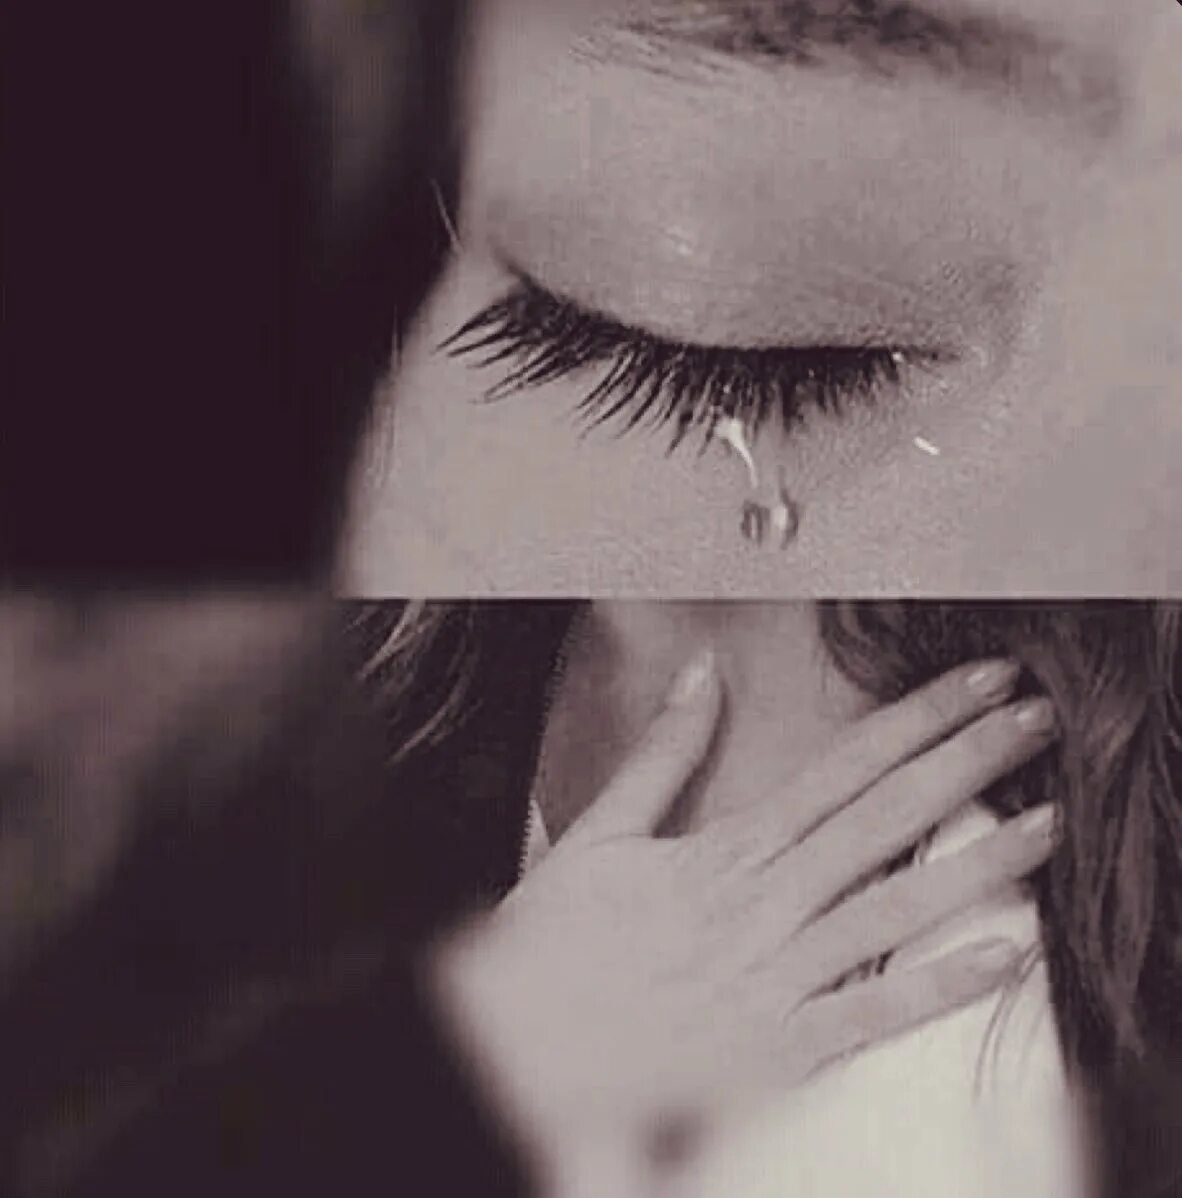 Она очень сильно стонет. Девушка в слезах. Девушка плачет. Девушка со слезами на глазах. Слезы картинки.